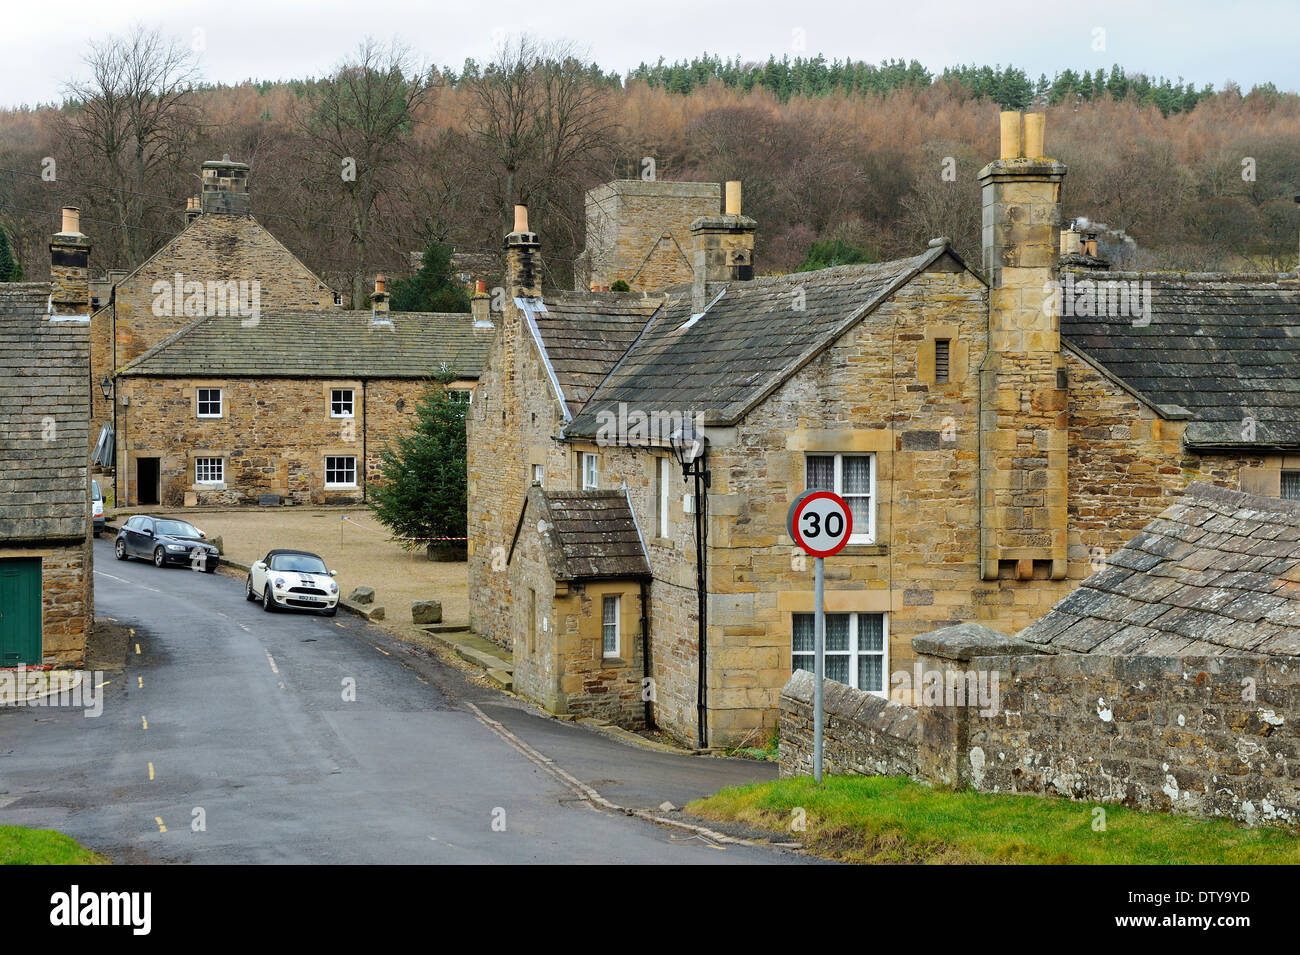 Blanchland village, Northumberland, England Stock Photo